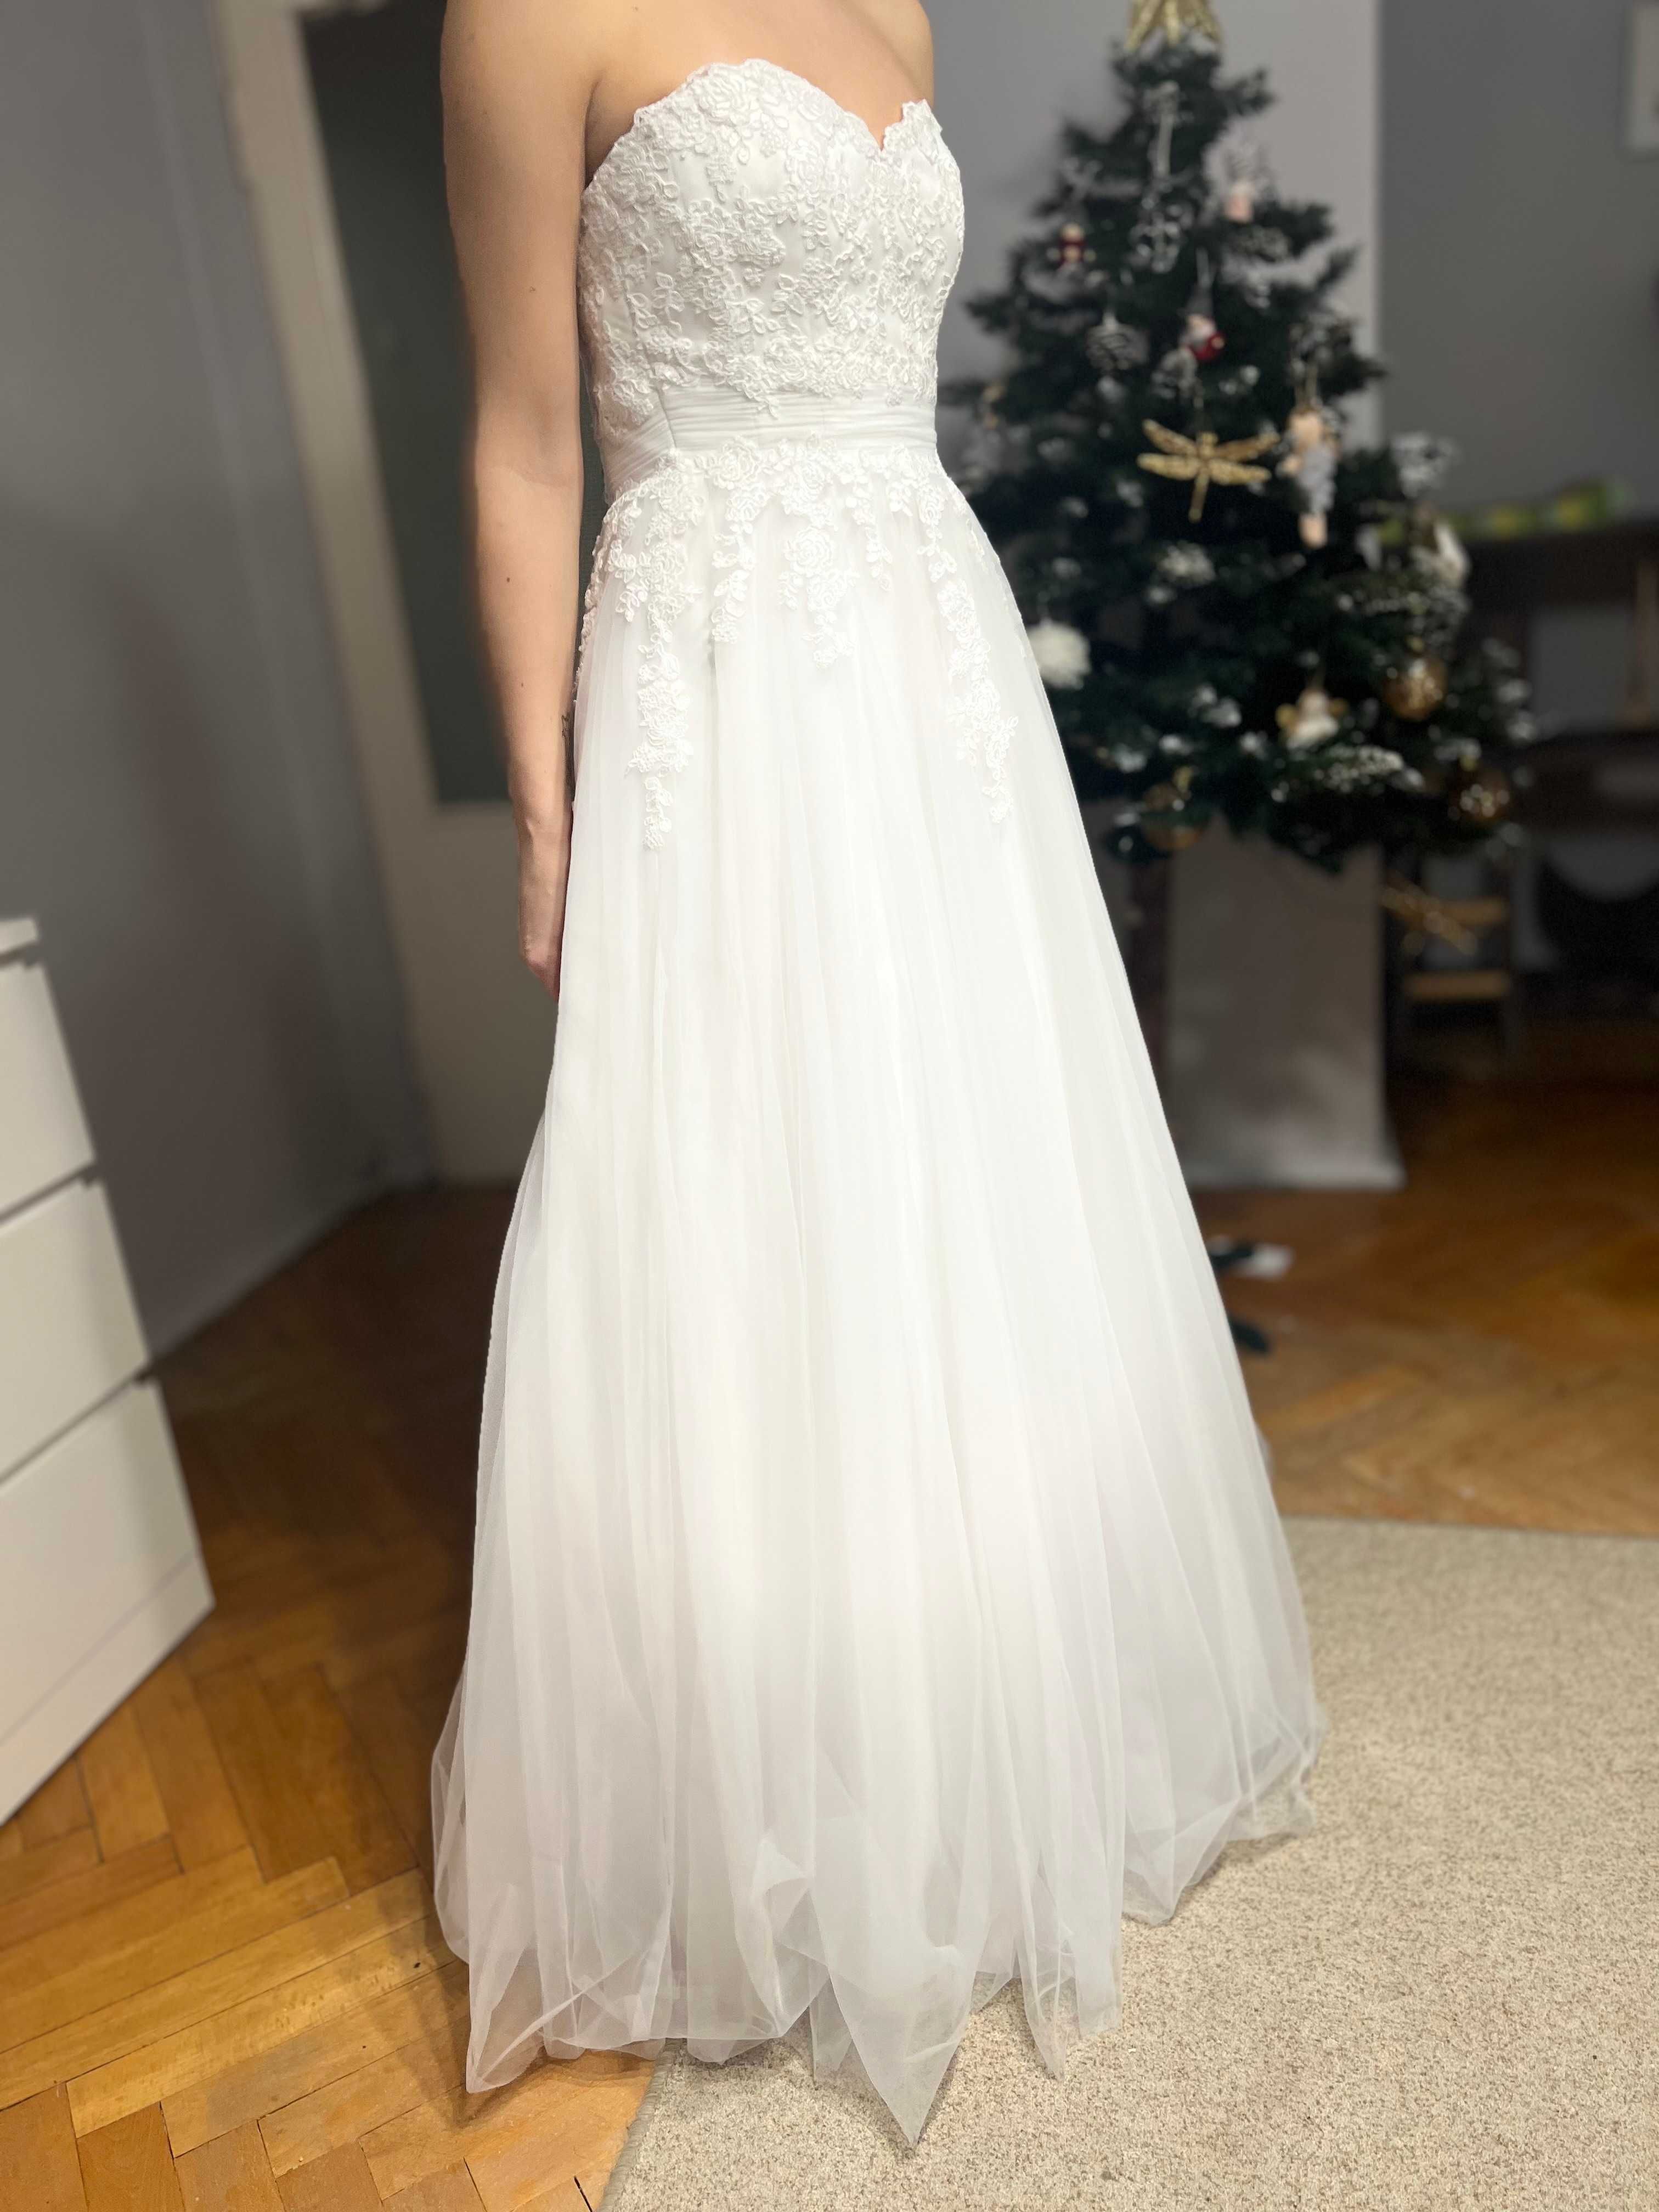 Nowa suknia ślubna dla drobnej Panny Młodej. Cena - dogadamy się :)